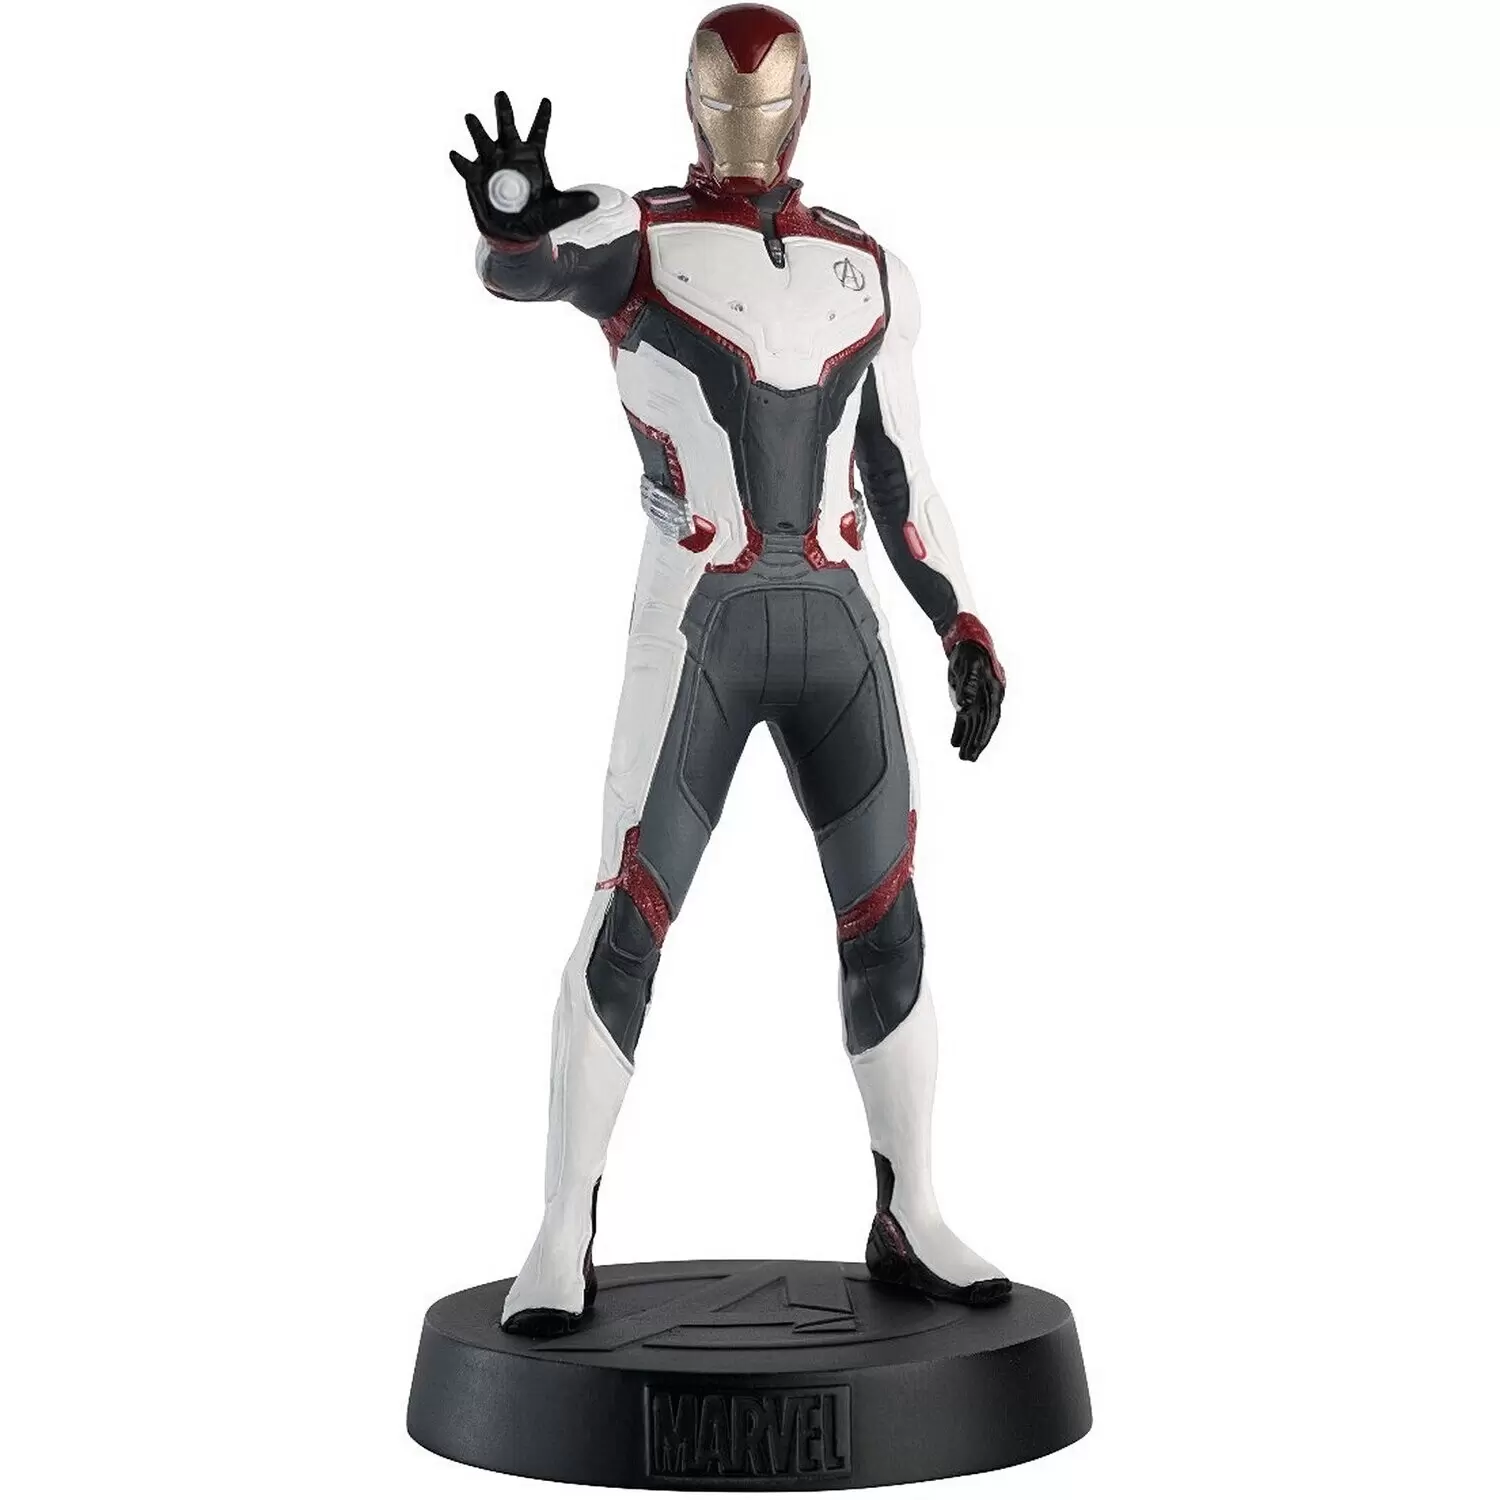 Figurines des films Marvel - Iron Man Team Suit Figurine (Avengers: Endgame)